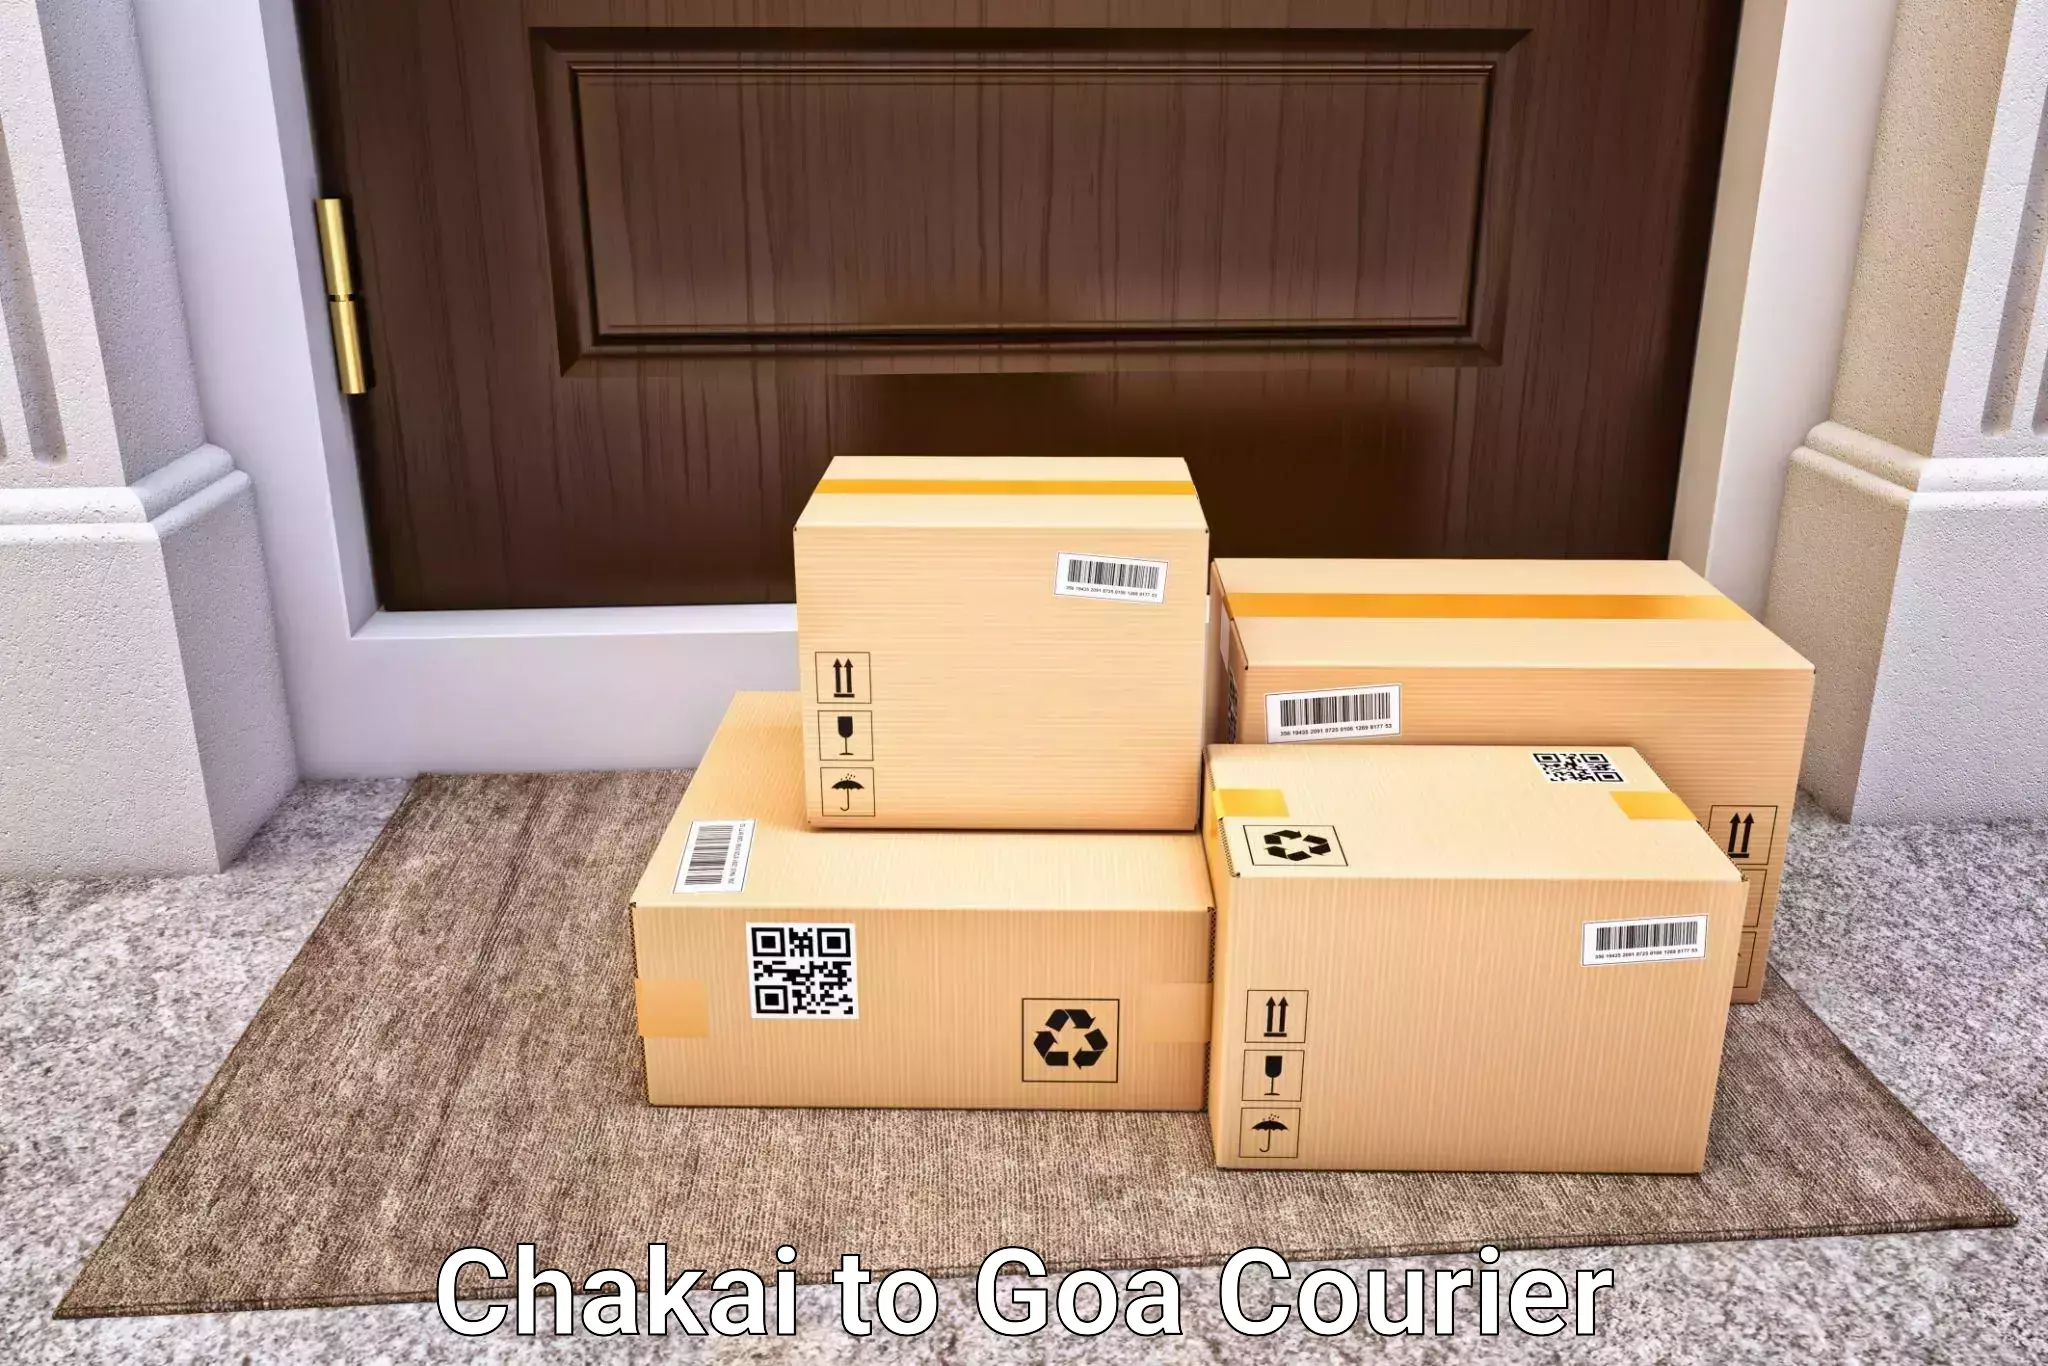 Express luggage delivery Chakai to Goa